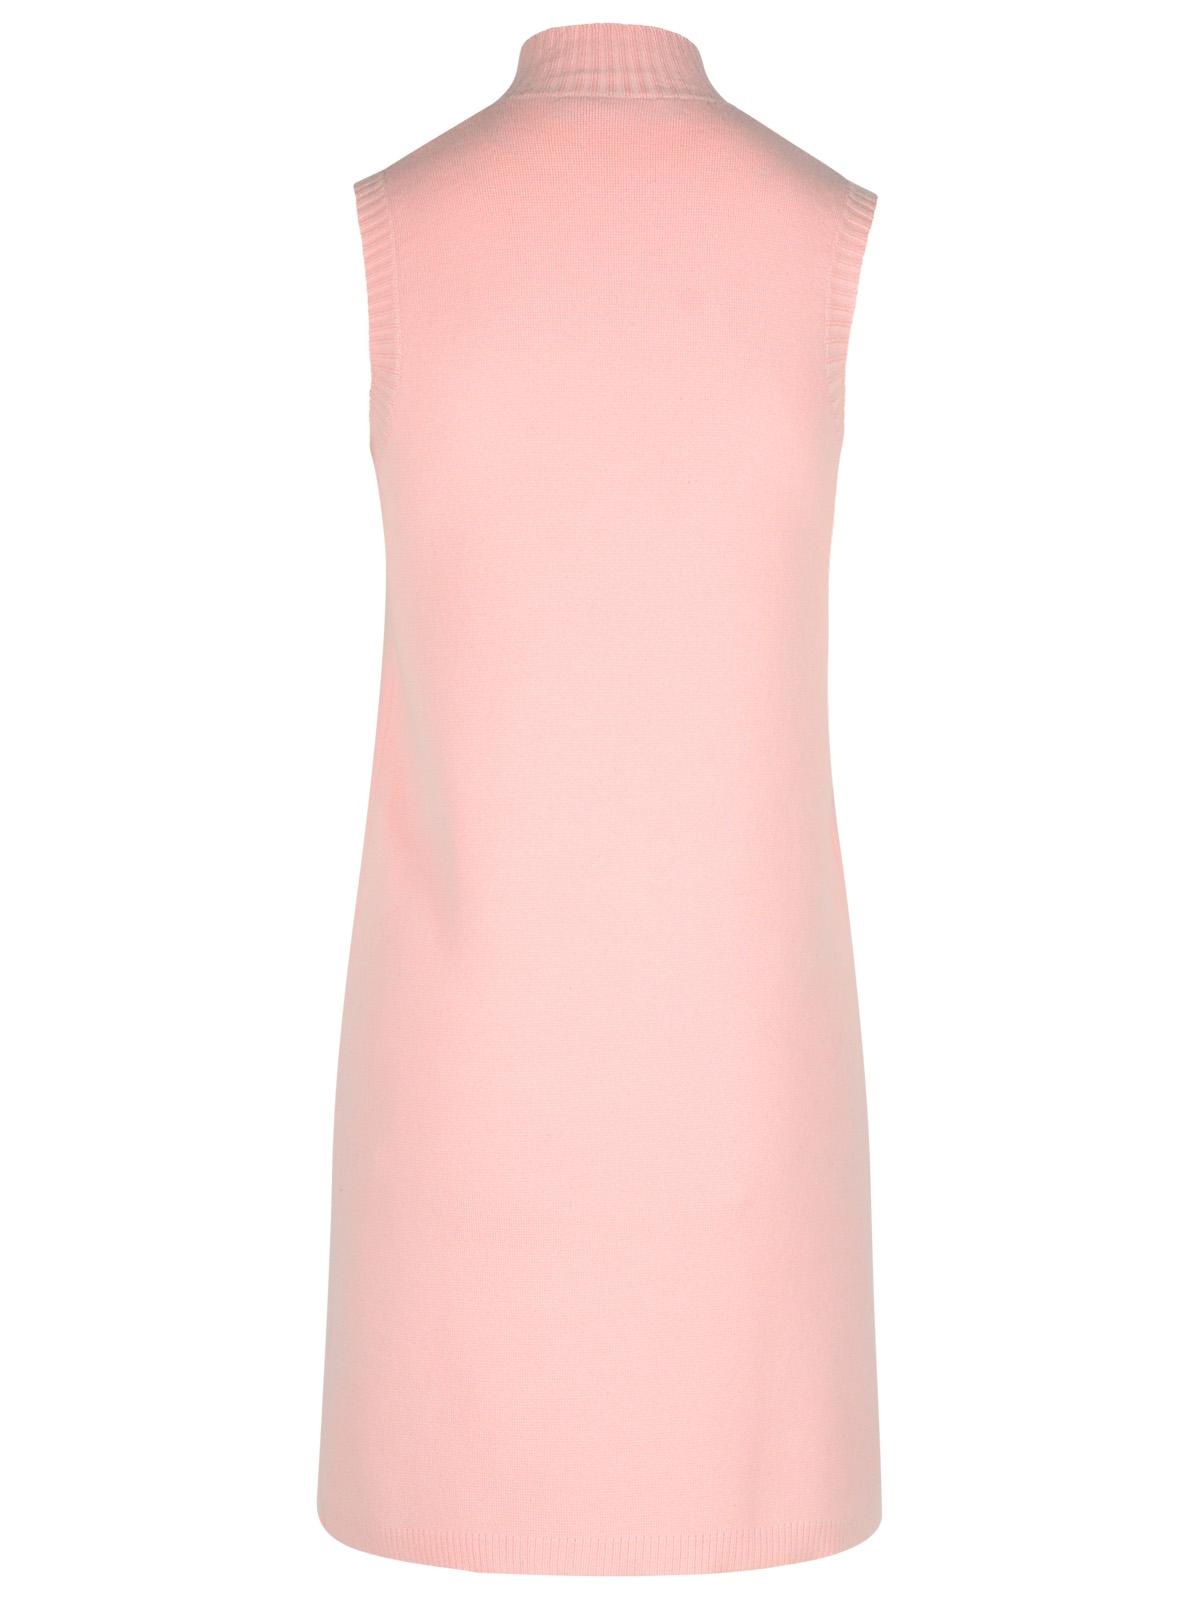 Versace Pink Wool Blend Dress Woman - 3